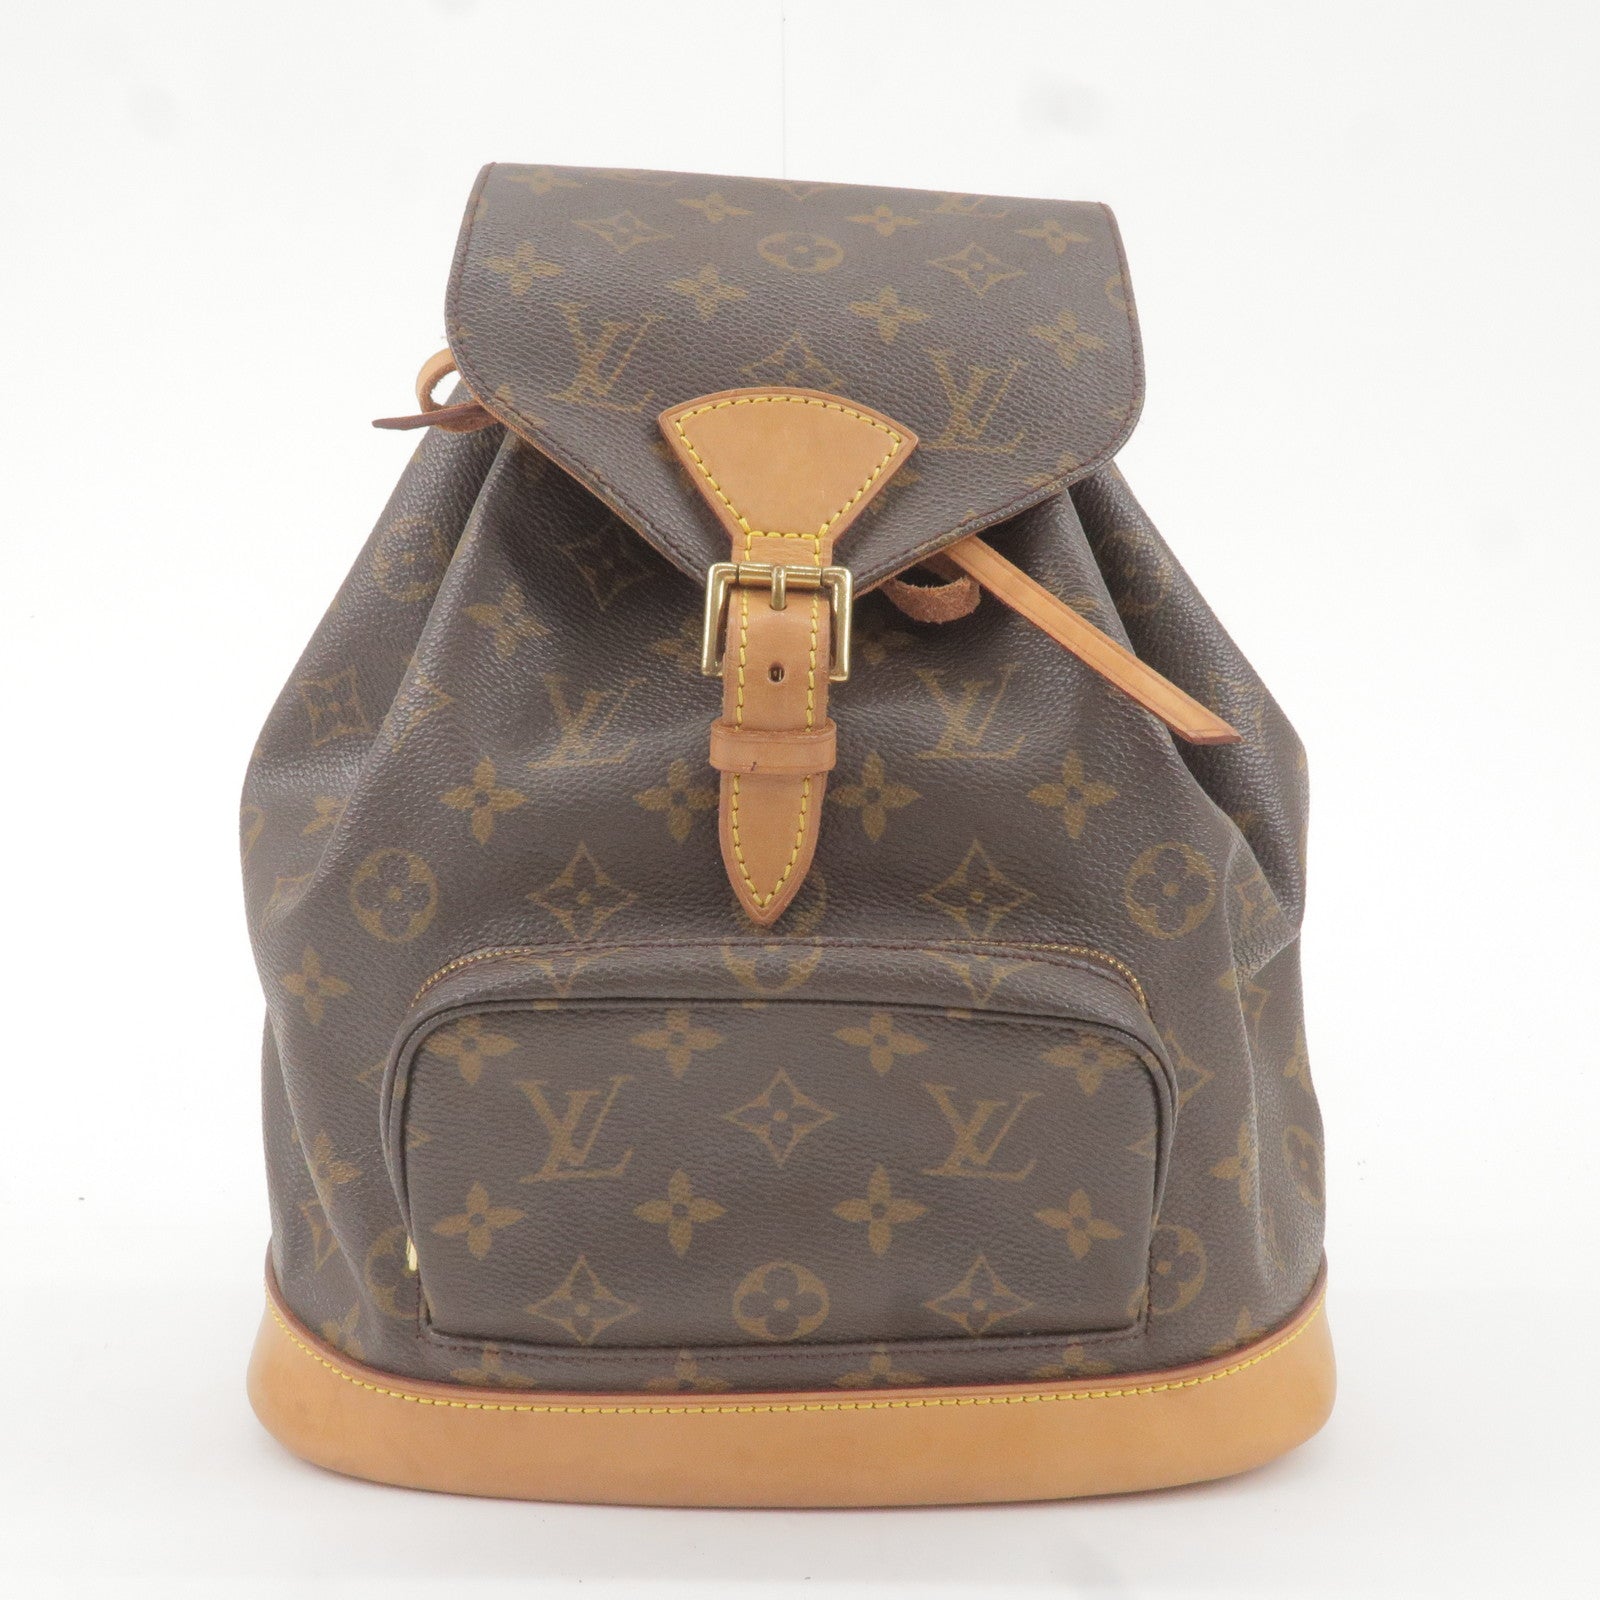 Pre-Owned Louis Vuitton Brea MM Tote Bag - Pristine Condition